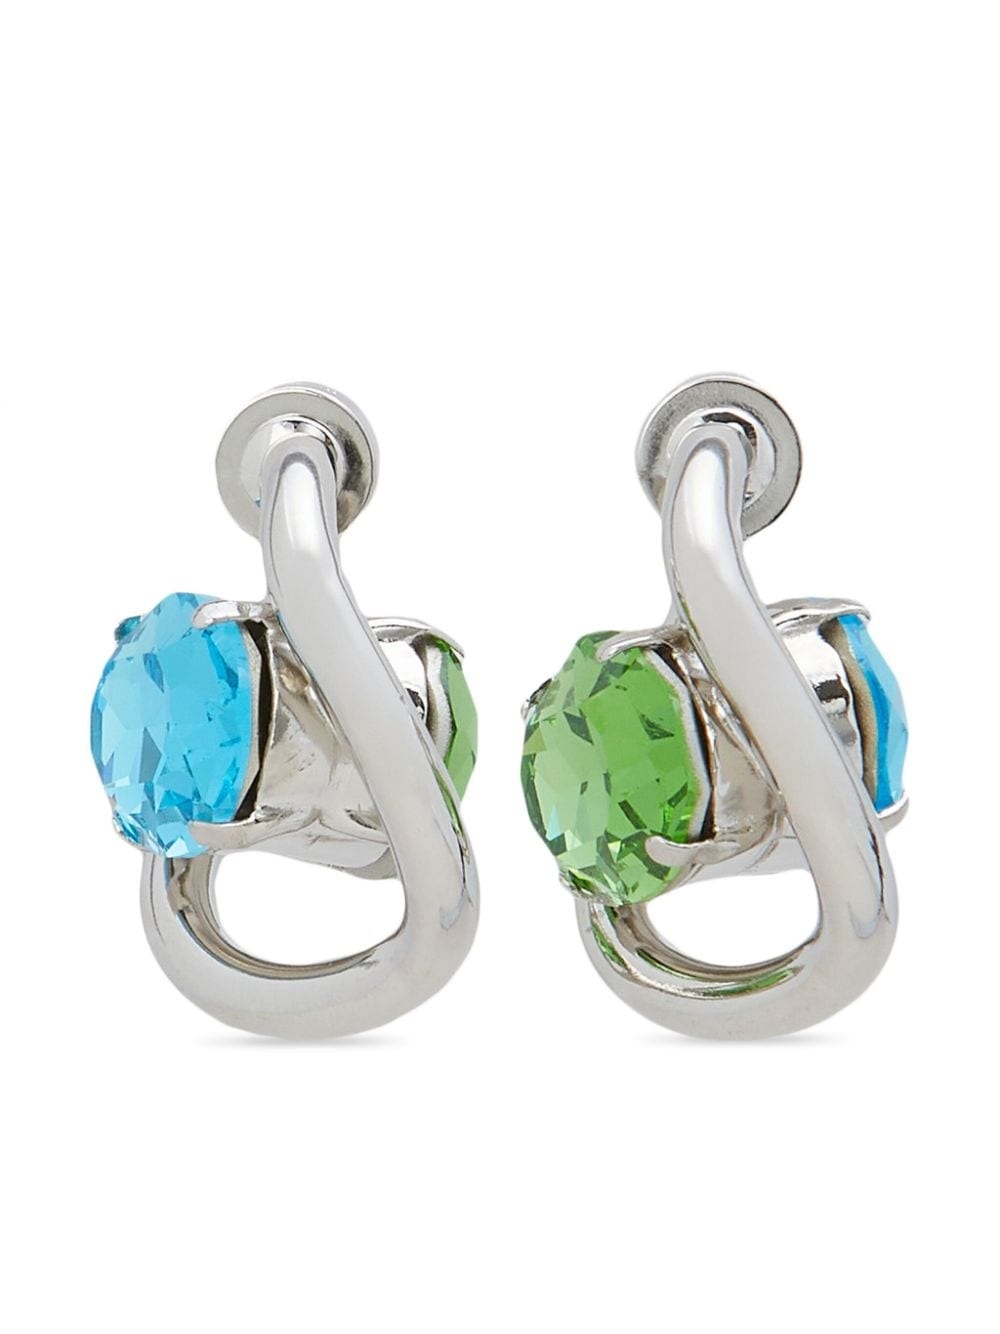 crystal-embellished hoop earrings - 1